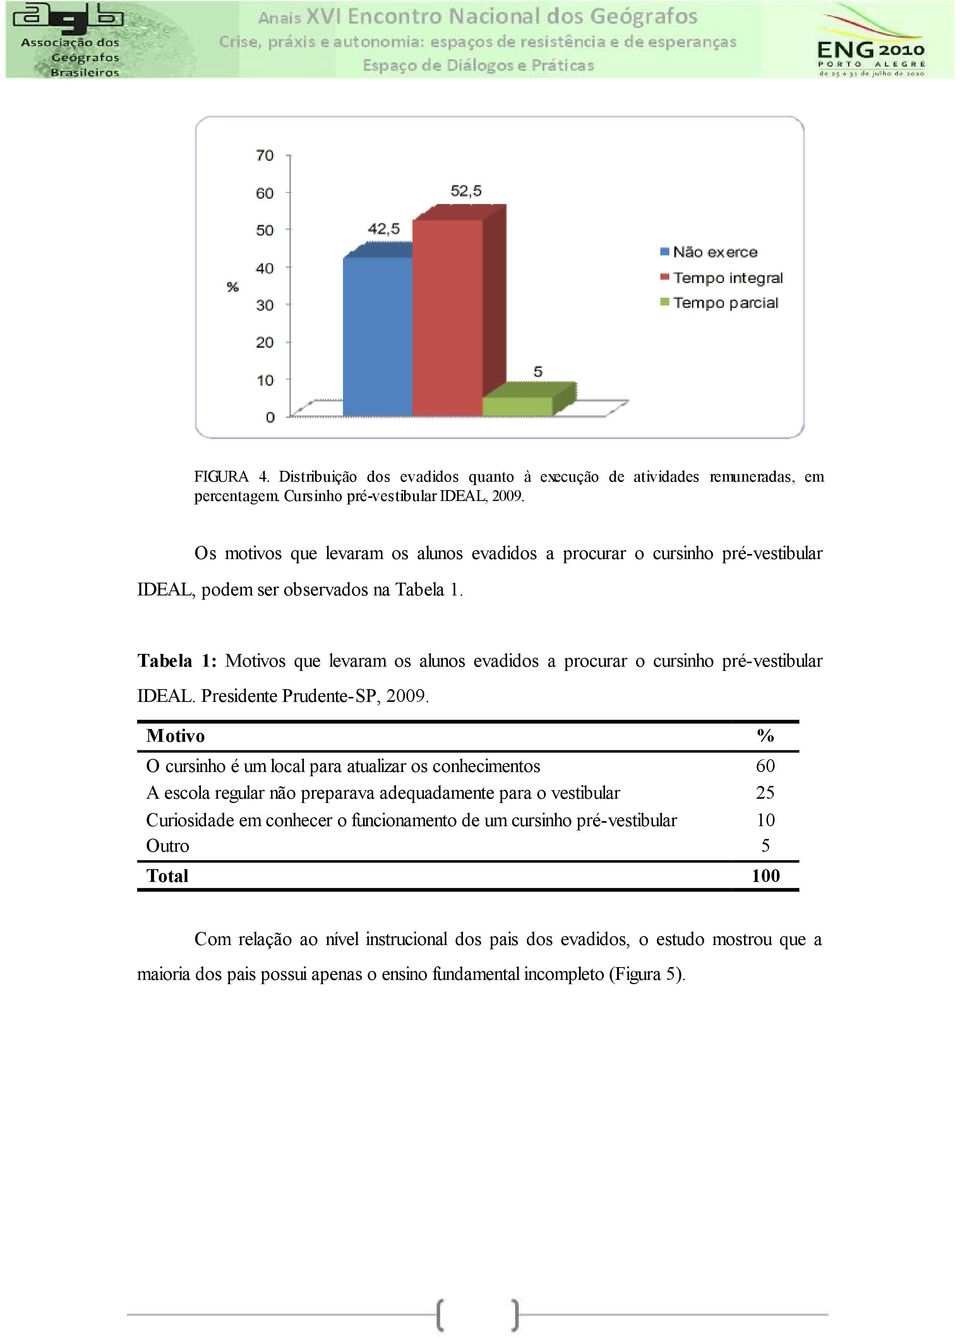 Tabela 1: Motivos que levaram os alunos evadidos a procurar o cursinho pré-vestibular IDEAL. Presidente Prudente-SP, 2009.